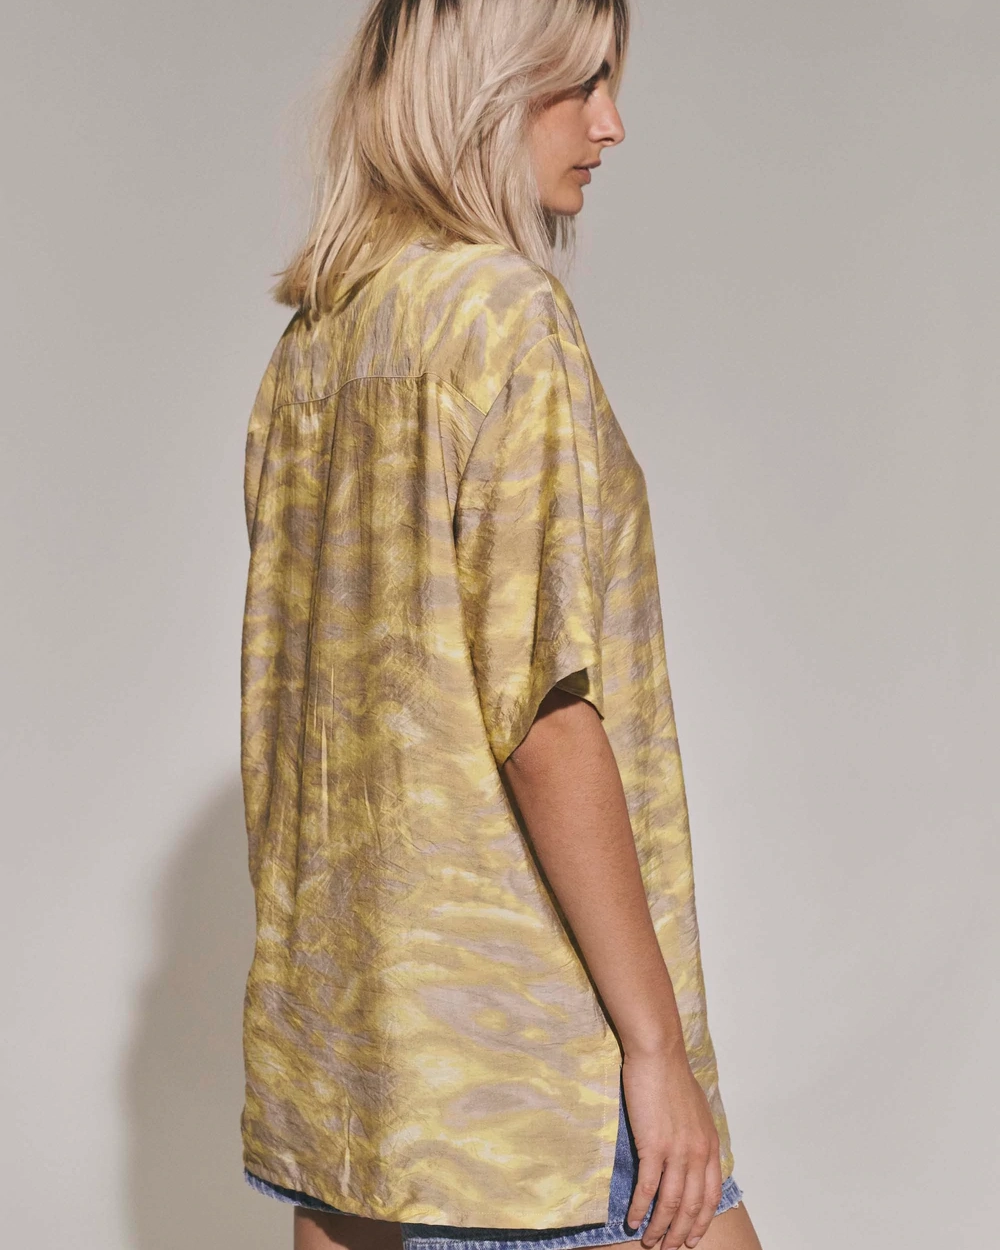 Skjorta Alyssa - Light Yellow Print - L